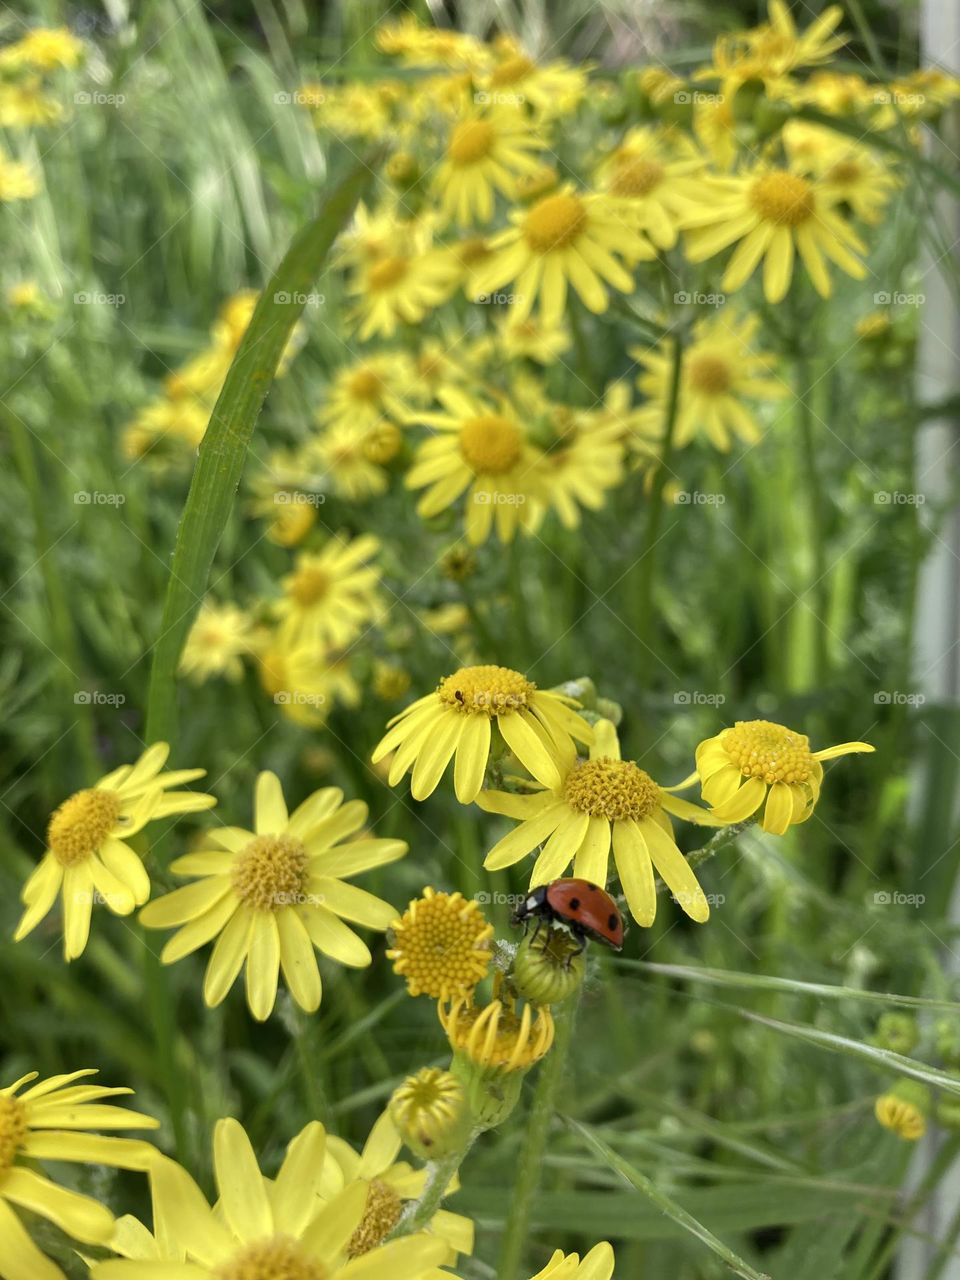 Ladybug among the yellow daisies 